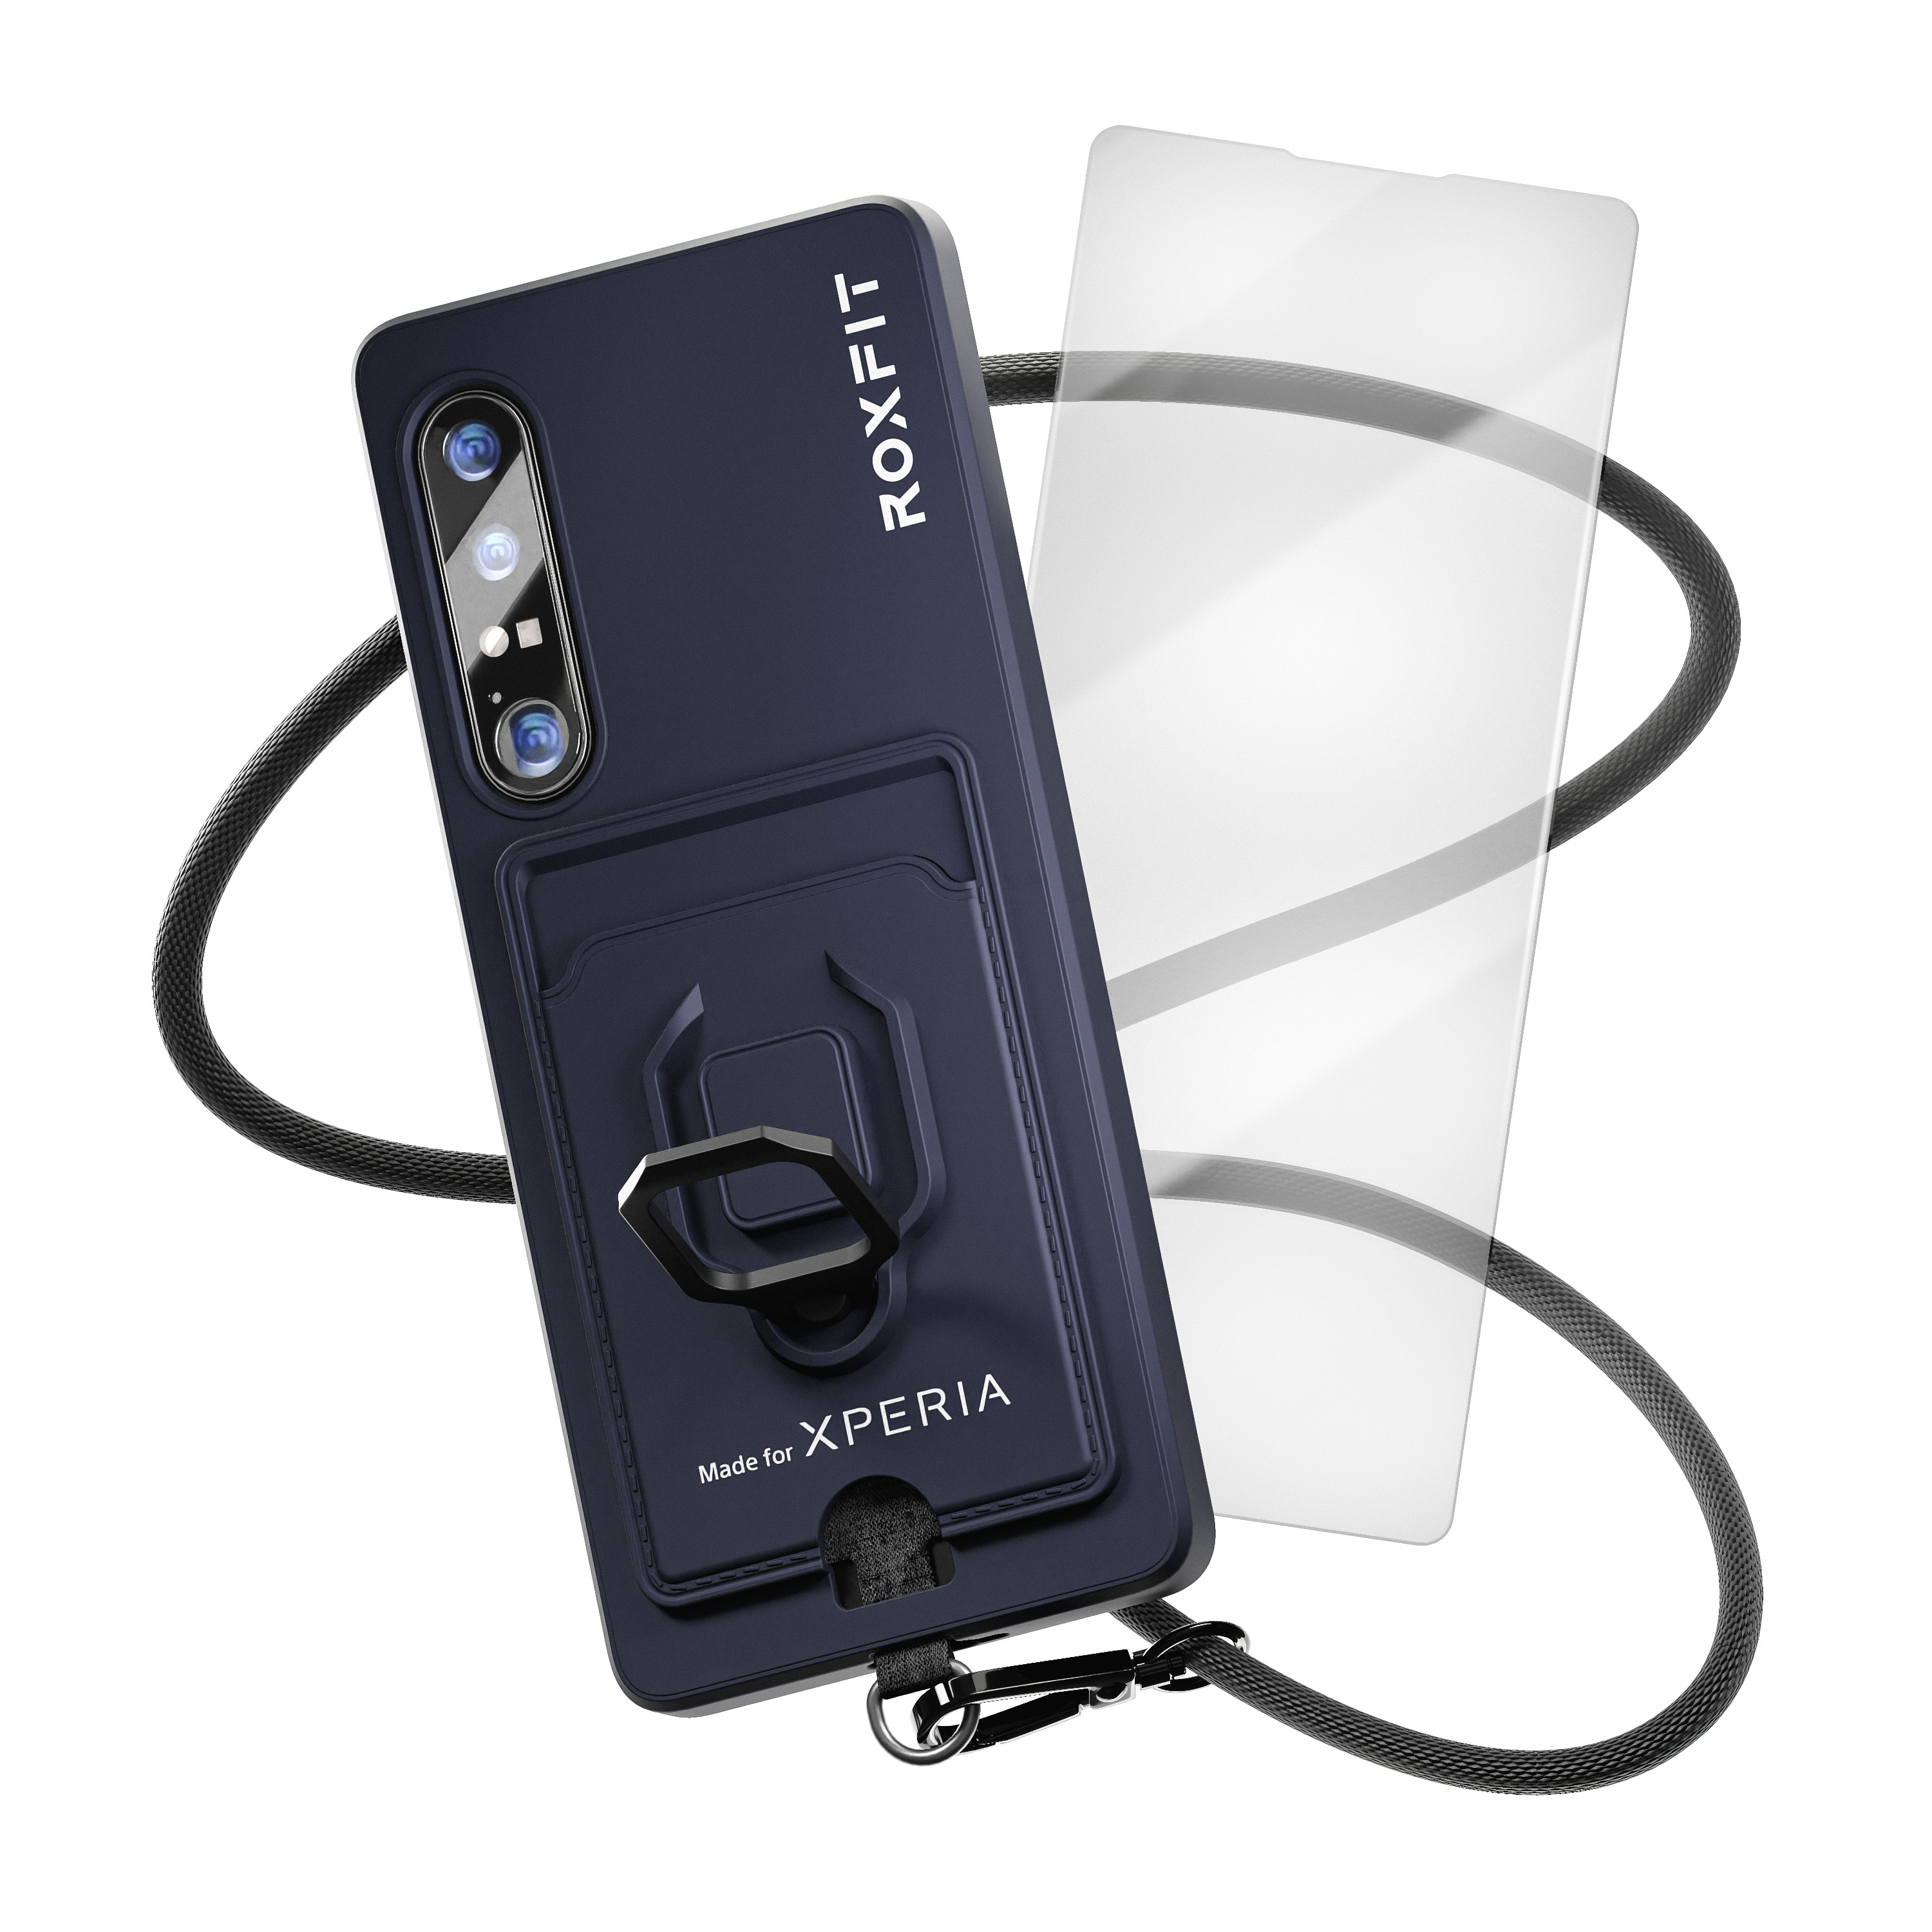 Roxfit Sony Xperia 1 IV 多功能手機保護殼連螢幕保護貼 (深藍色)